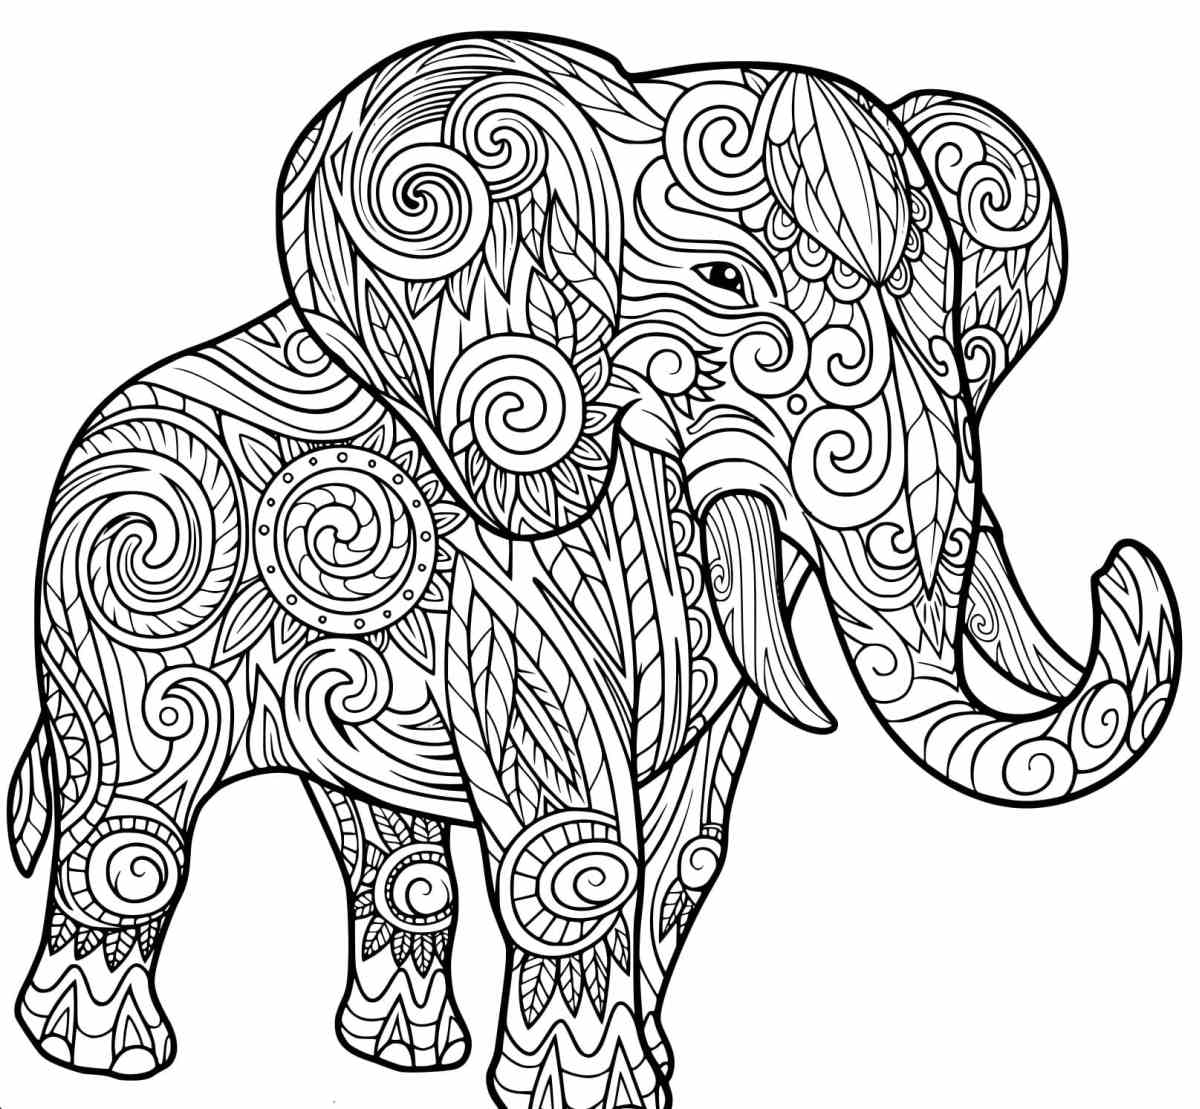 Kolorowanki dla dorosłych - wydrukuj i pokoloruj pięknego słonia